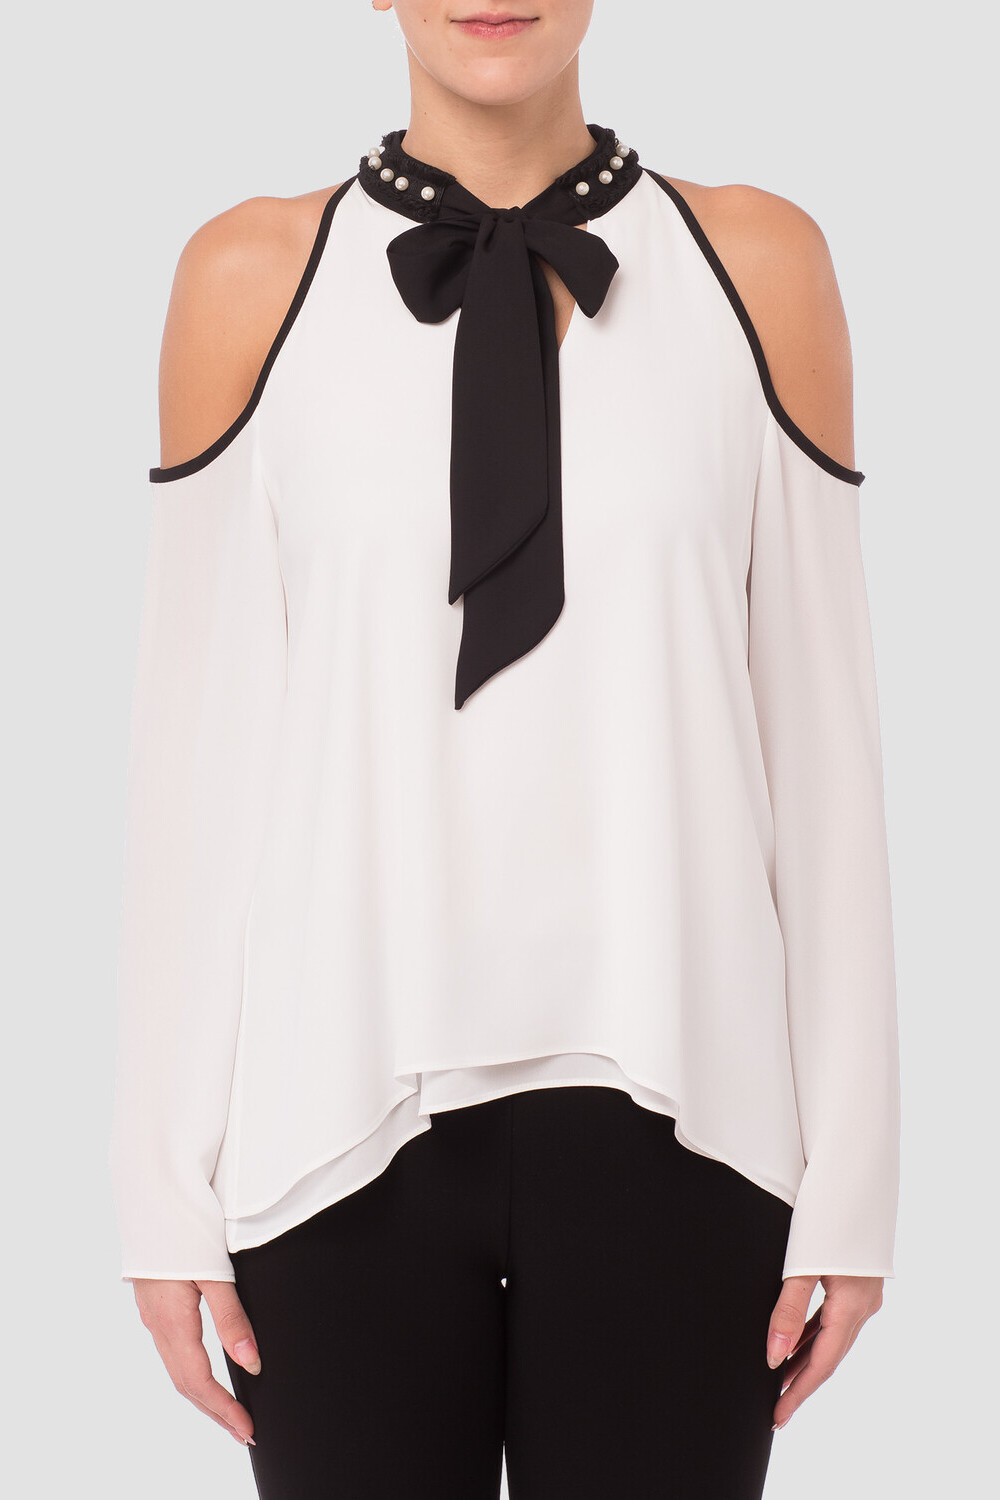 Joseph Ribkoff blouse style 181295. Blanc Cassé/noir